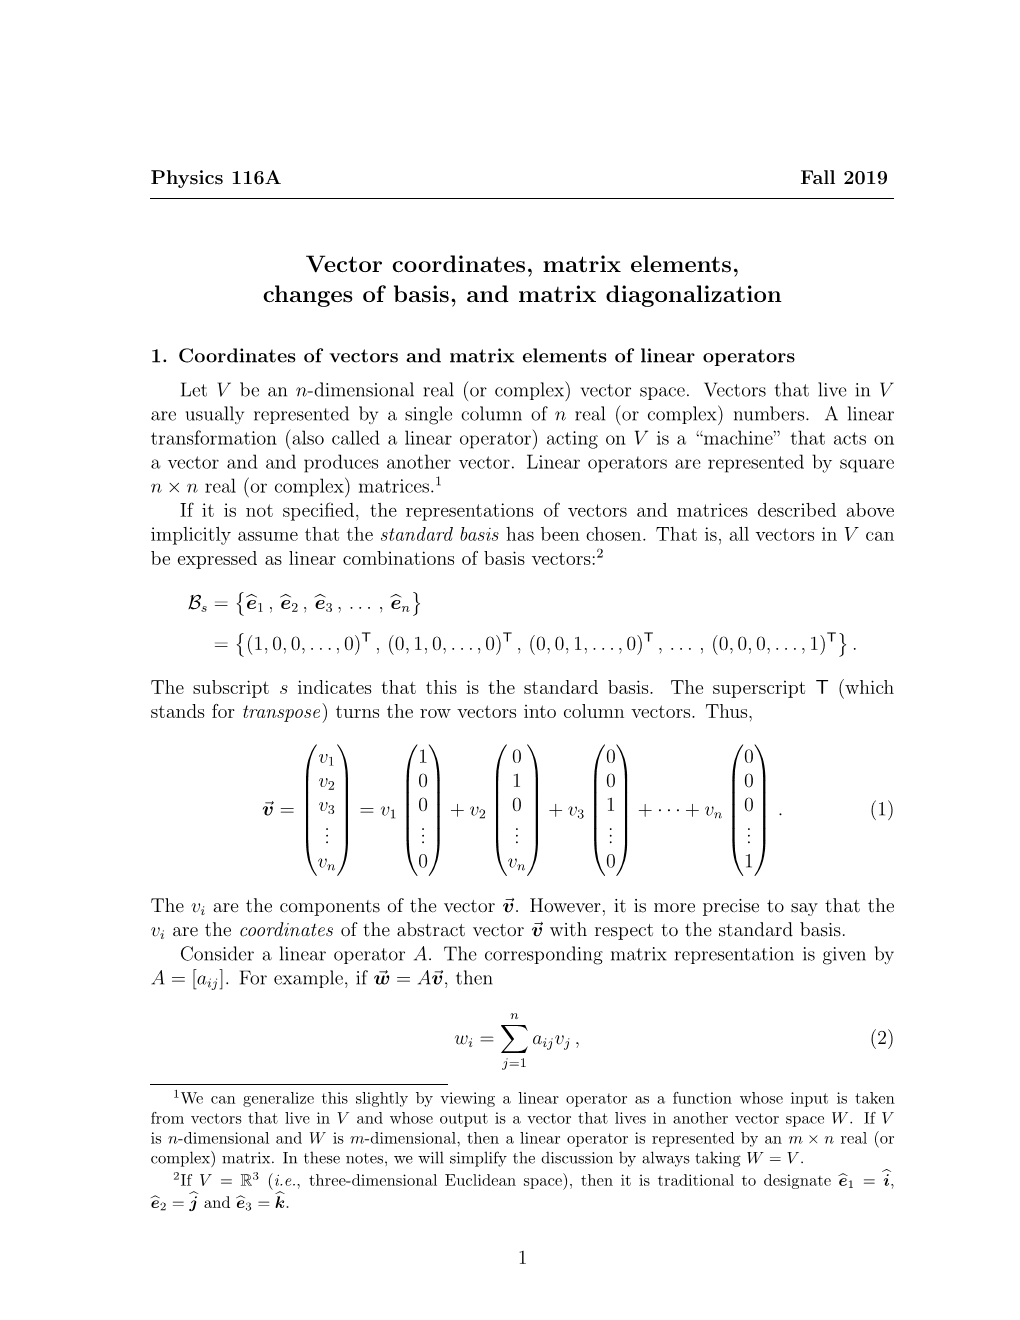 Vector Coordinates, Matrix Elements, Changes of Basis, and Matrix Diagonalization